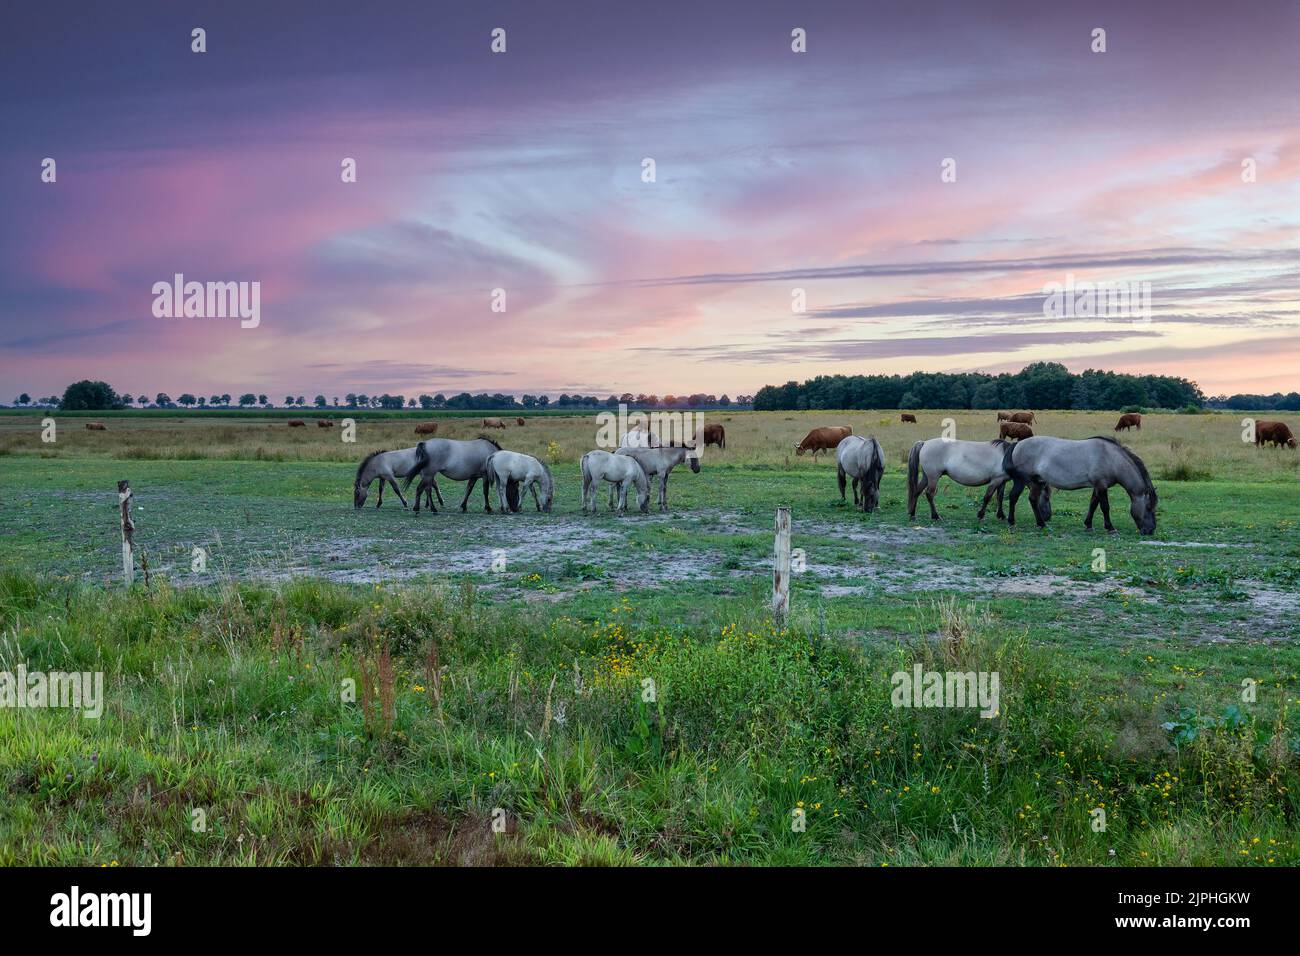 Landschaft bei Sonnenuntergang mit einer Herde wilder Konik-Pferde in Eextveld in der niederländischen Provinz Drenthe mit einem Hintergrund von warmen Farben der untergehenden Sonne Stockfoto